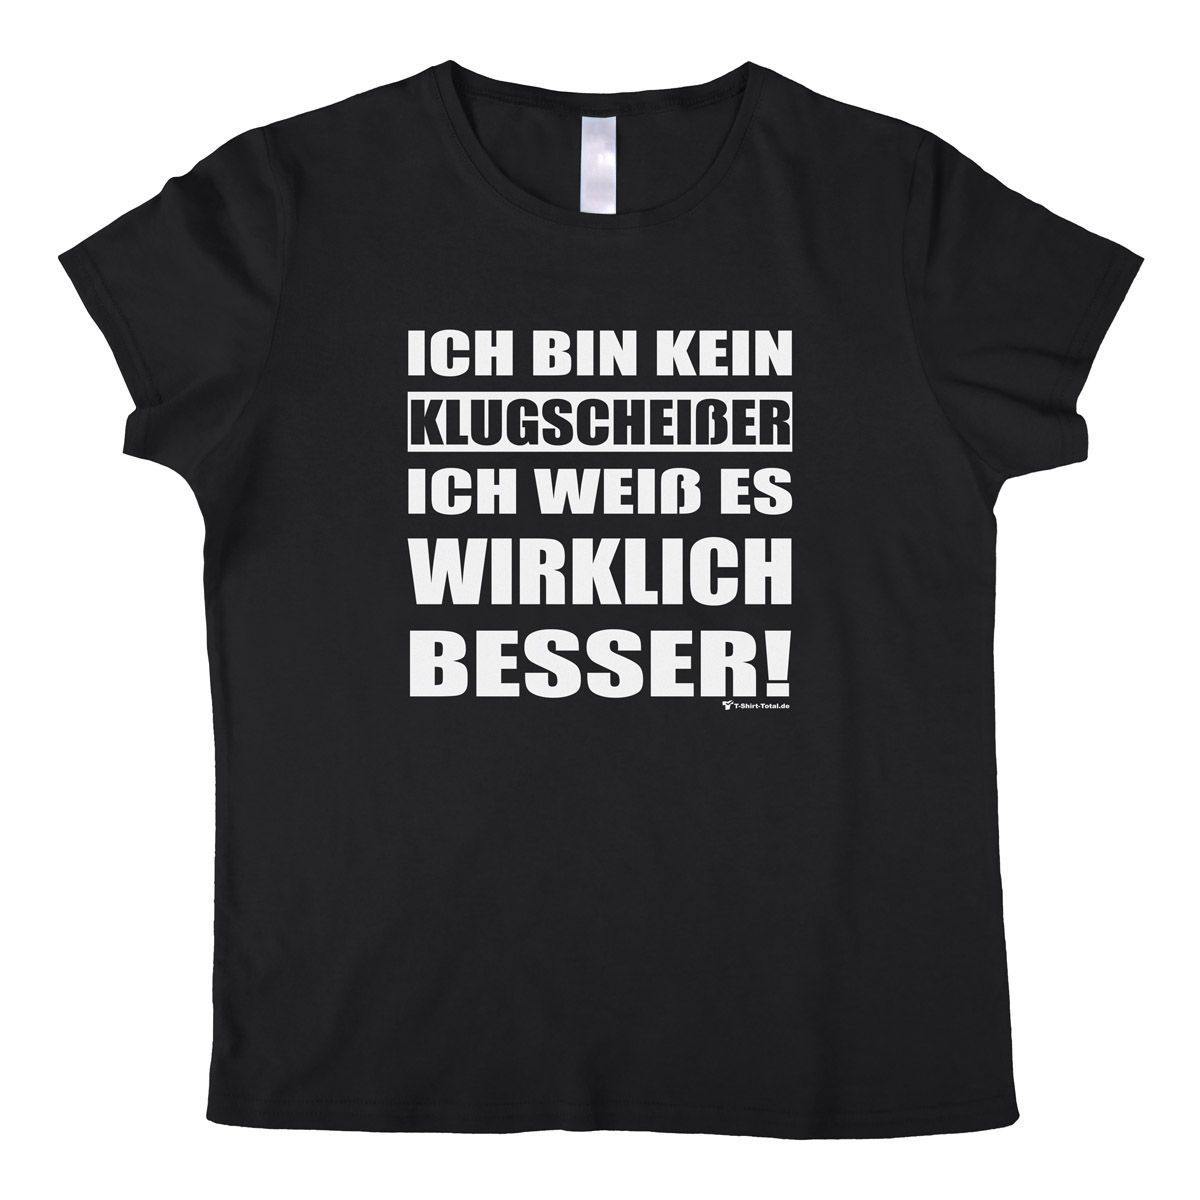 Klugscheißer Woman T-Shirt schwarz Extra Large